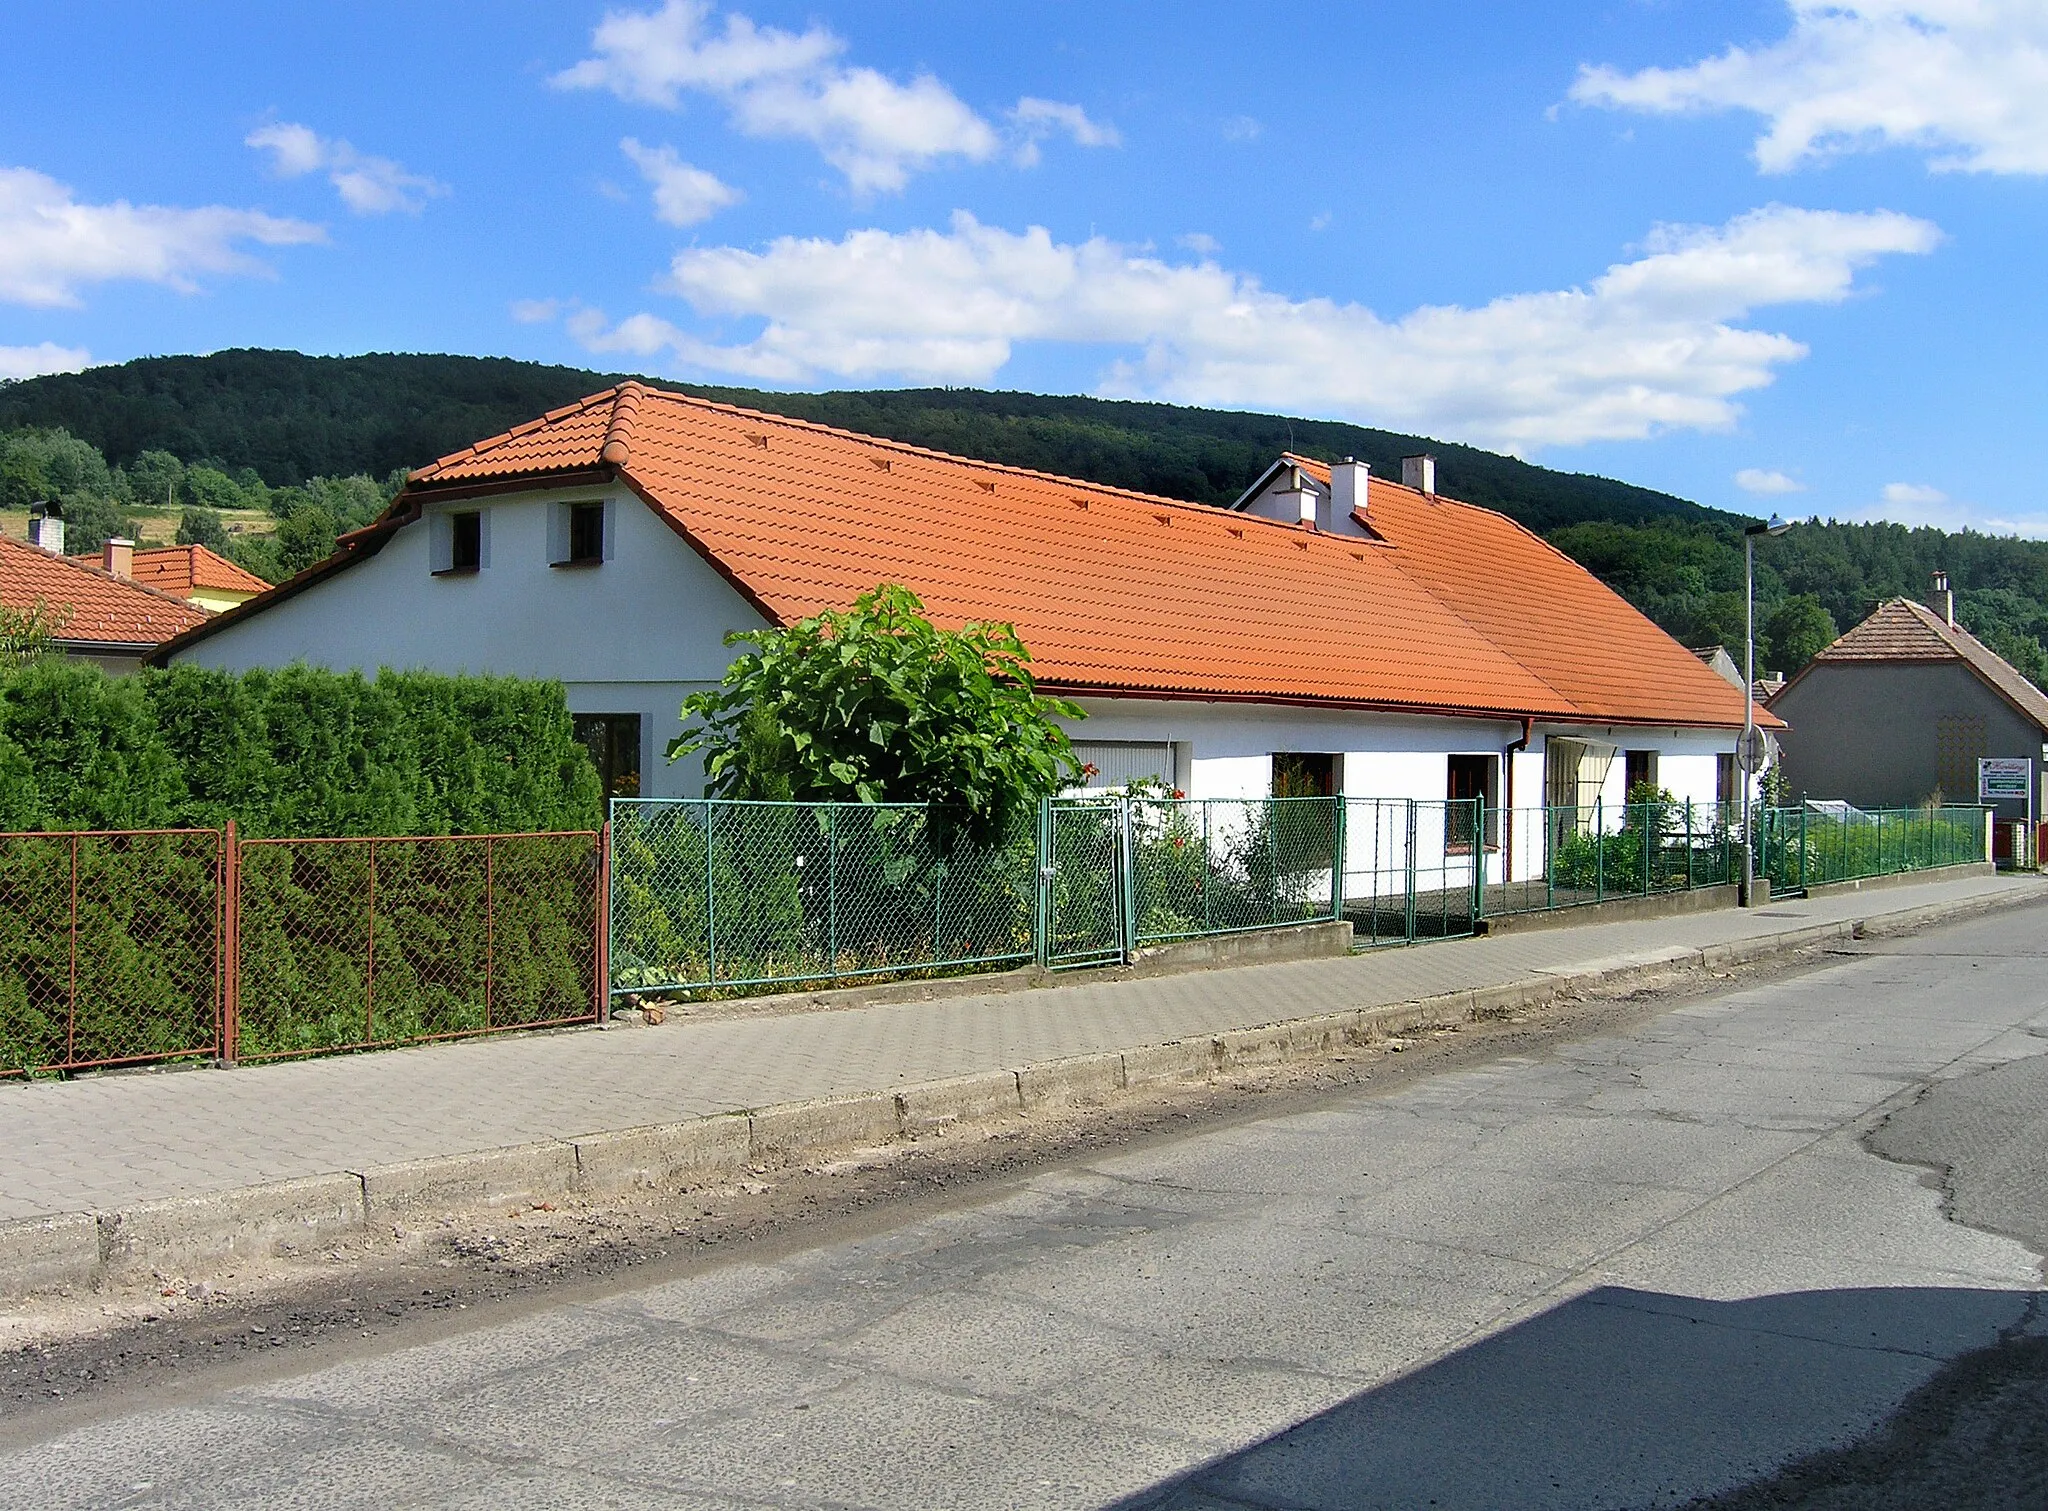 Photo showing: 1. máje street in Třemošnice, Czech Republic